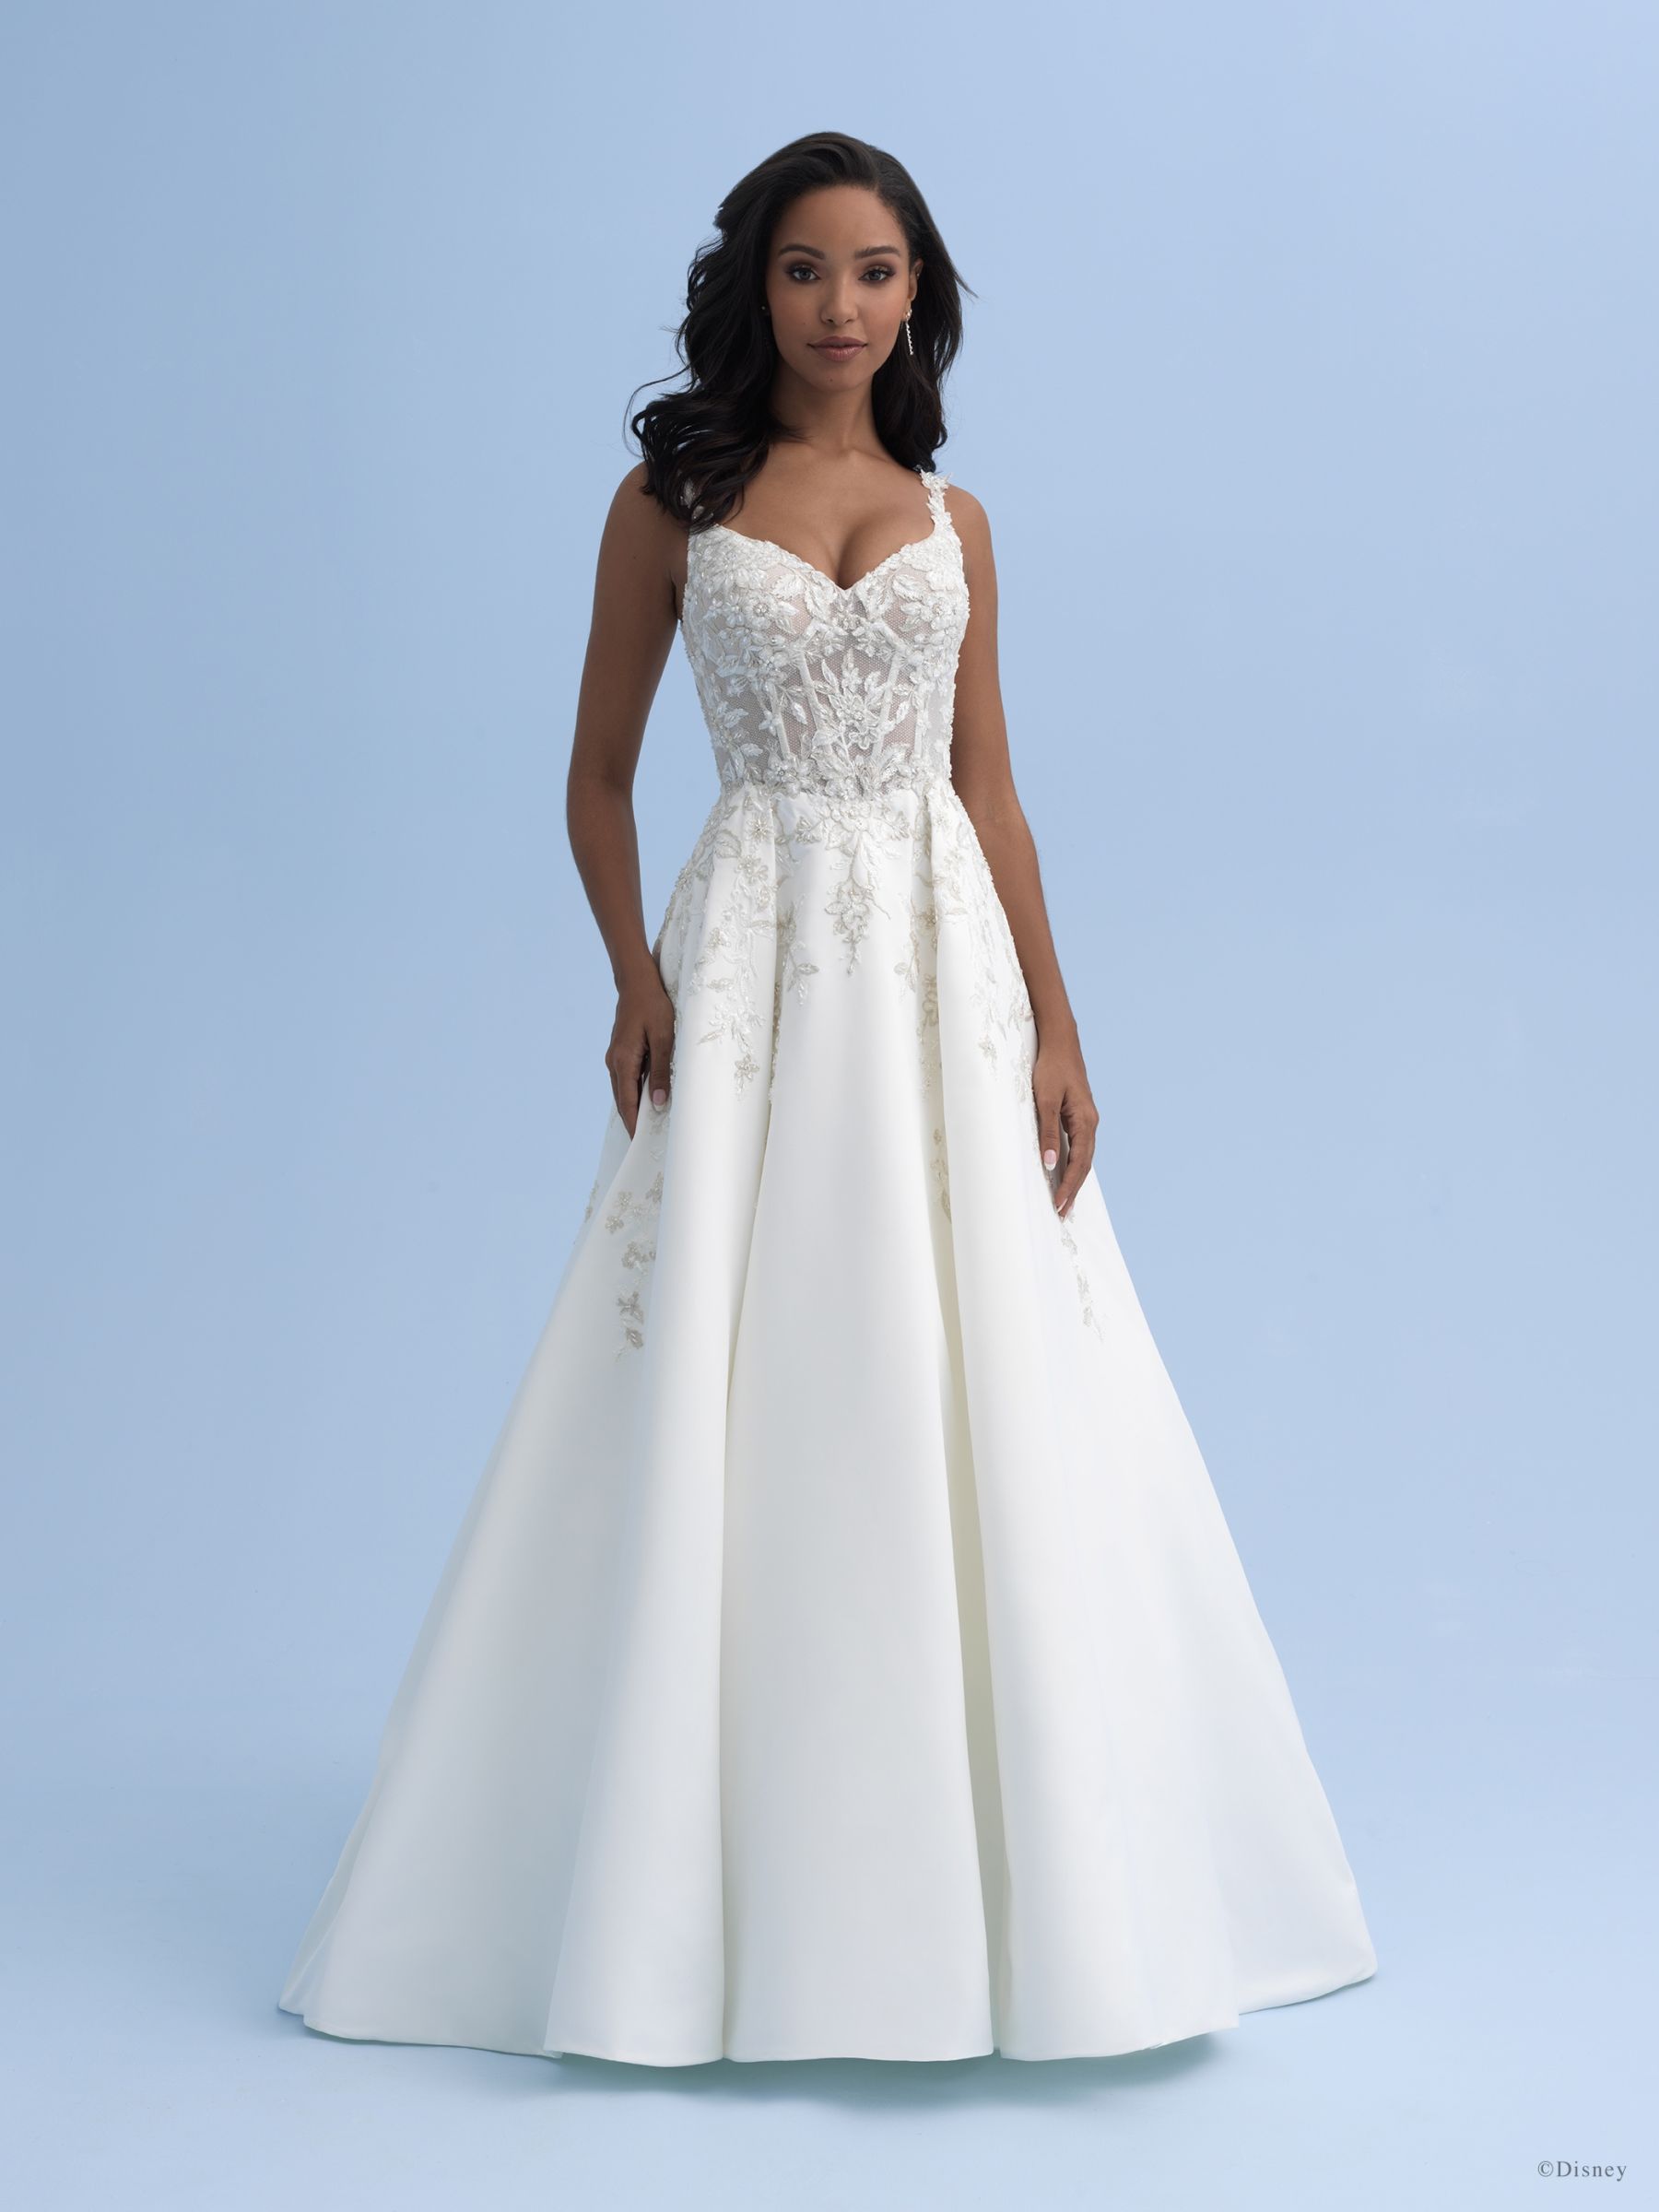 Disney lanza línea de vestidos de novia - Cadena